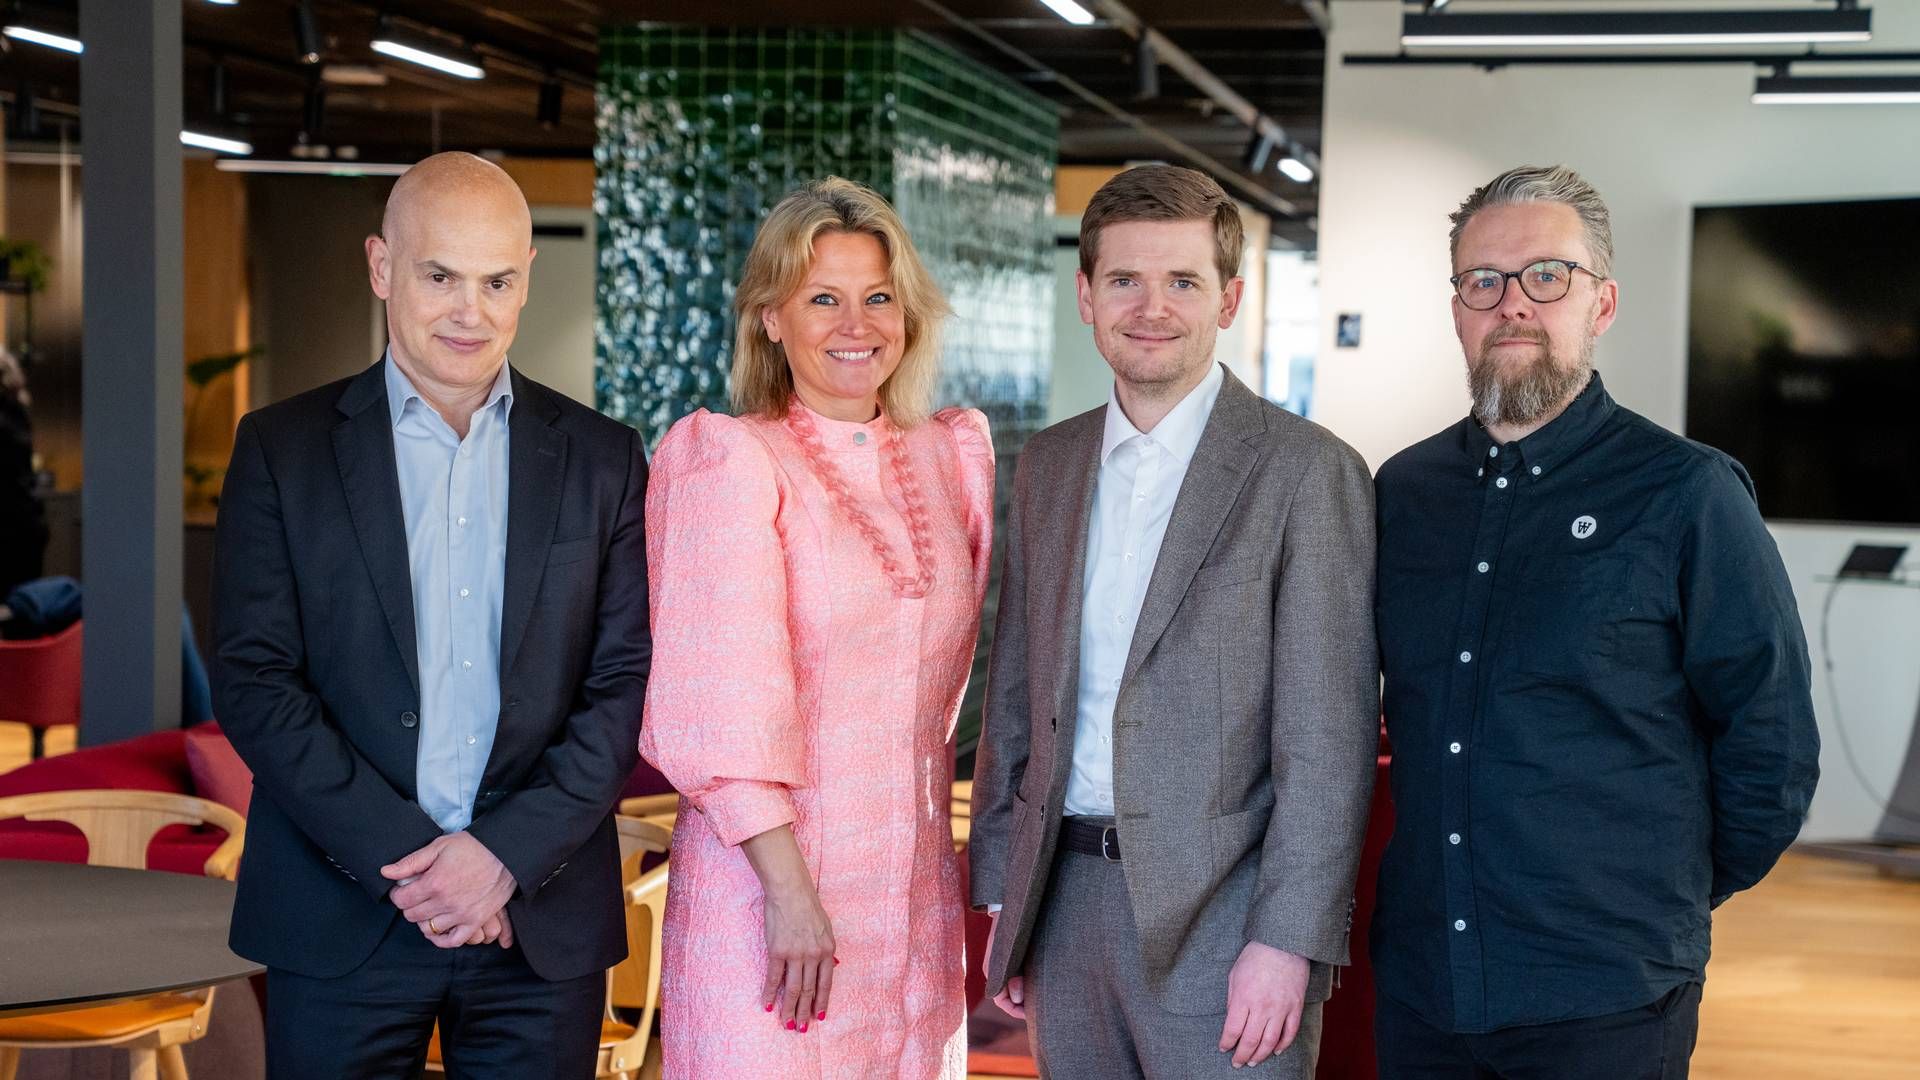 De fire nye partnere i Geelmuyden Kiese. Yderst til højre er Henrik Ebbesen og til venstre for ham står Anders Ebdrup. | Foto: Geelmuyden Kiese / PR